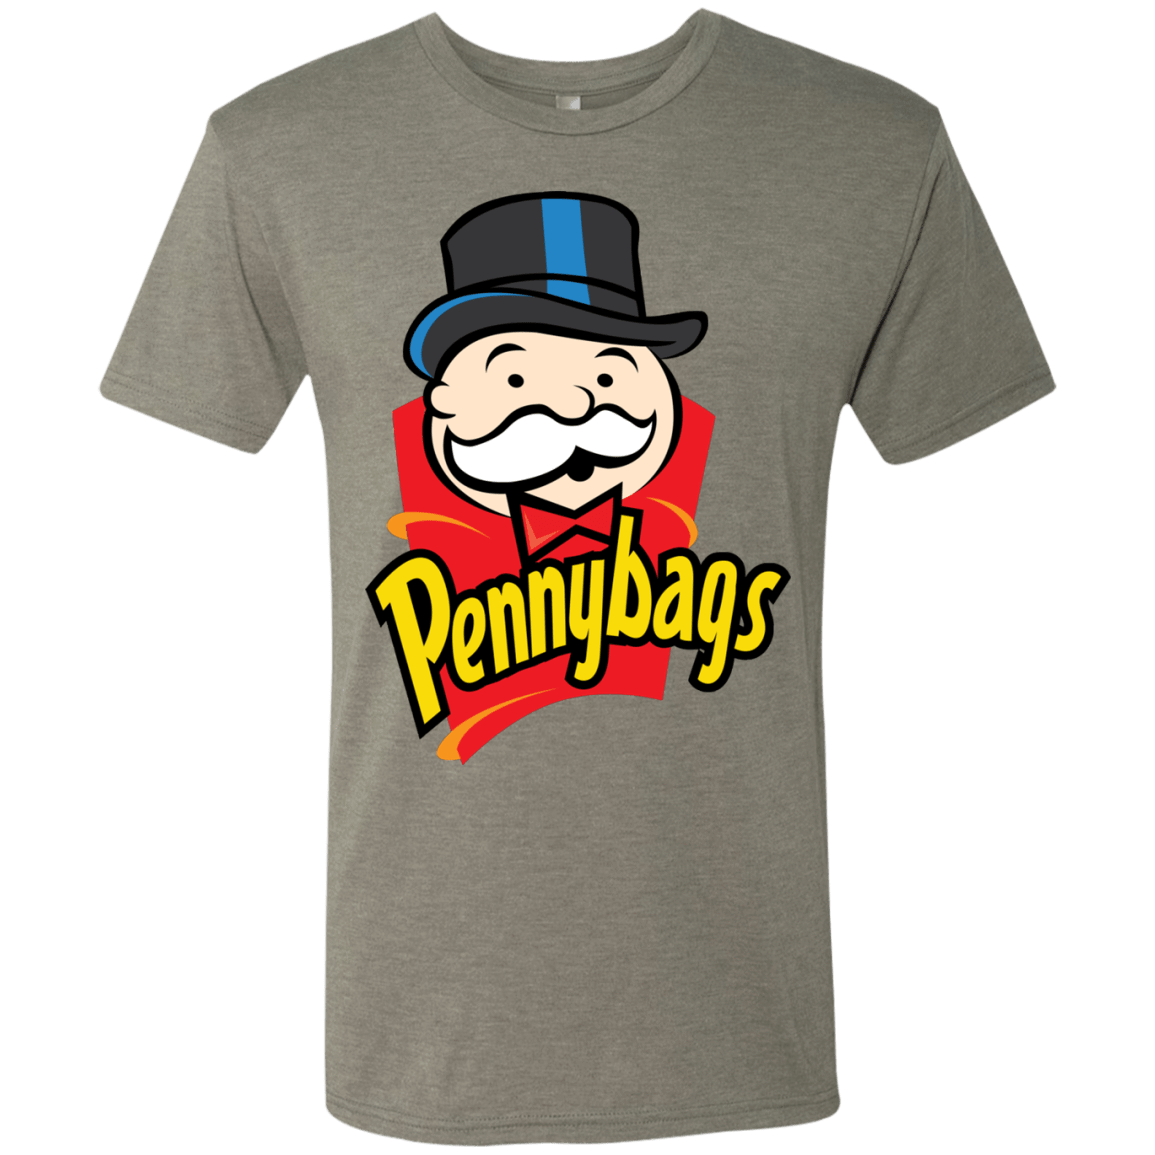 T-Shirts Venetian Grey / S Pennybags Men's Triblend T-Shirt